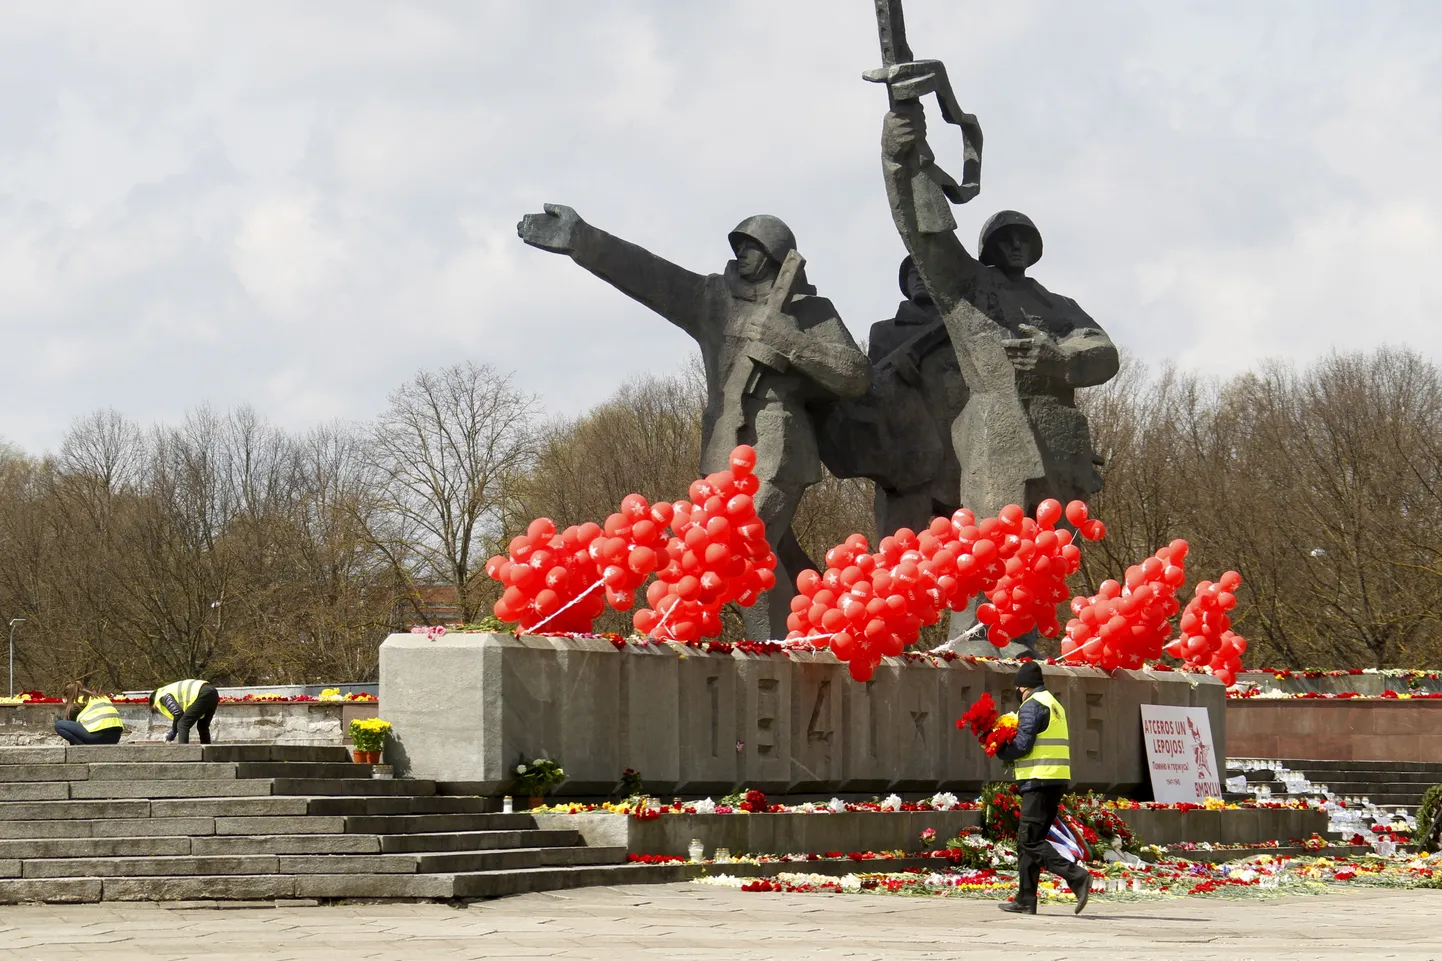 9 мая прошлого года доступ к рижскому Памятнику Победы был ограничен, чтобы предотвратить заражение ковидом. В этом году столица Латвии ограничила доступ к монументу, сославшись на опасность обрушения.